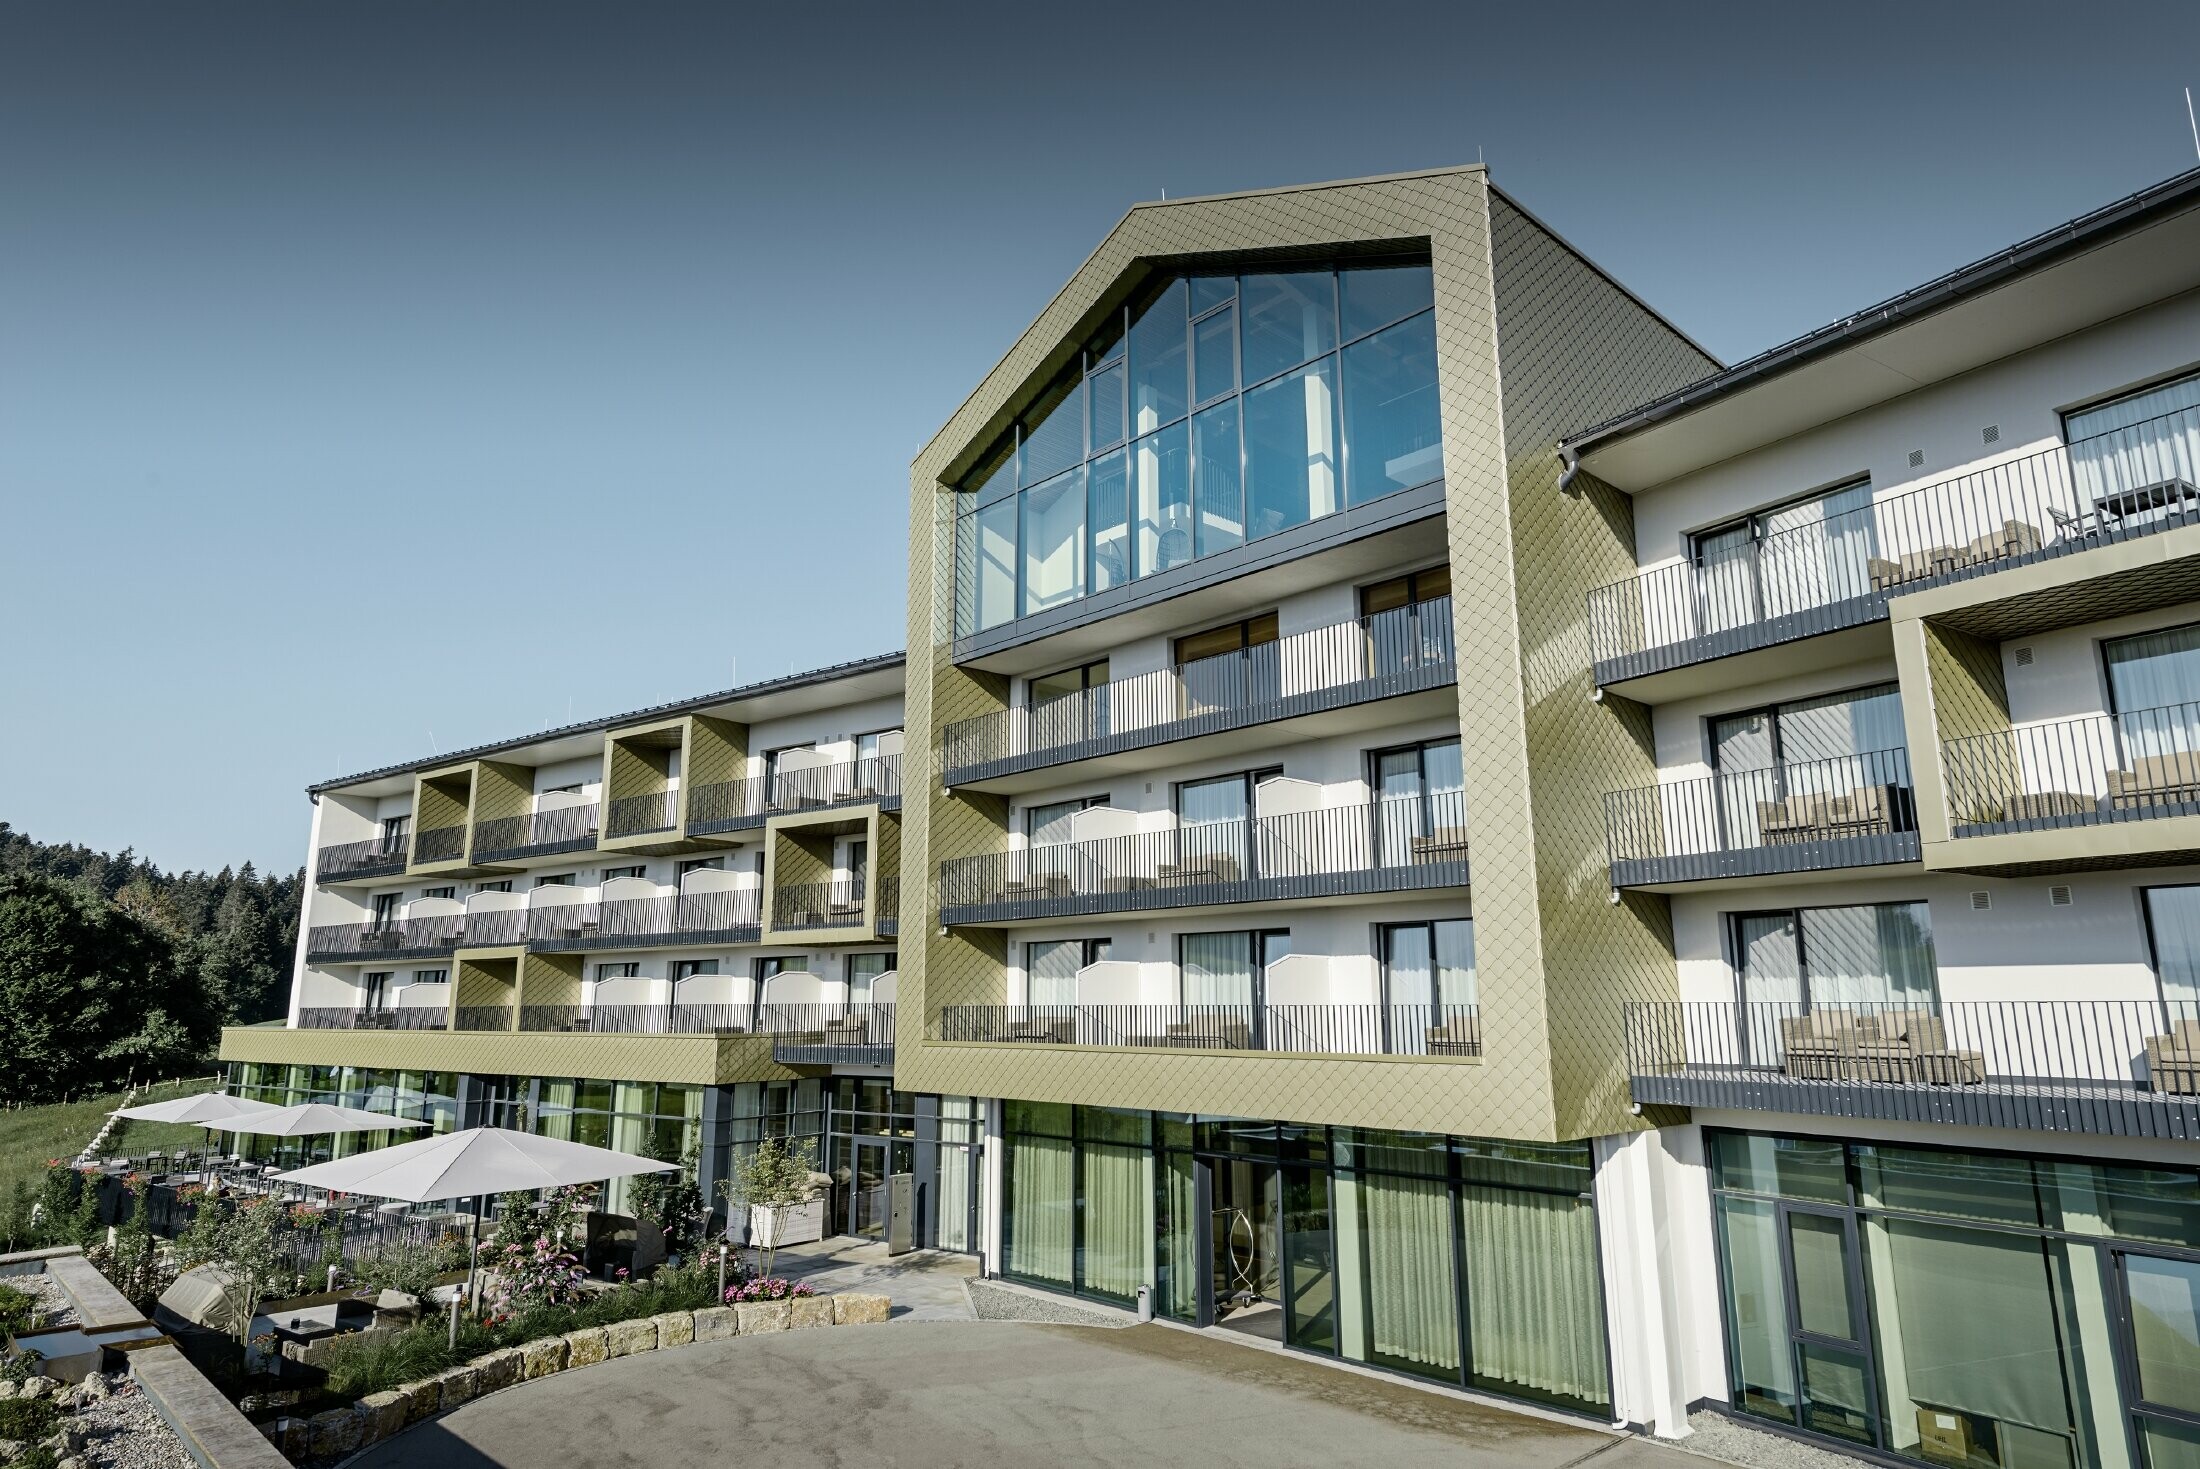 Conception de façade de l’hôtel Edita de Scheidegg avec les losanges en aluminium de PREFA au format 20 × 20 dans la couleur spéciale bronze clair.